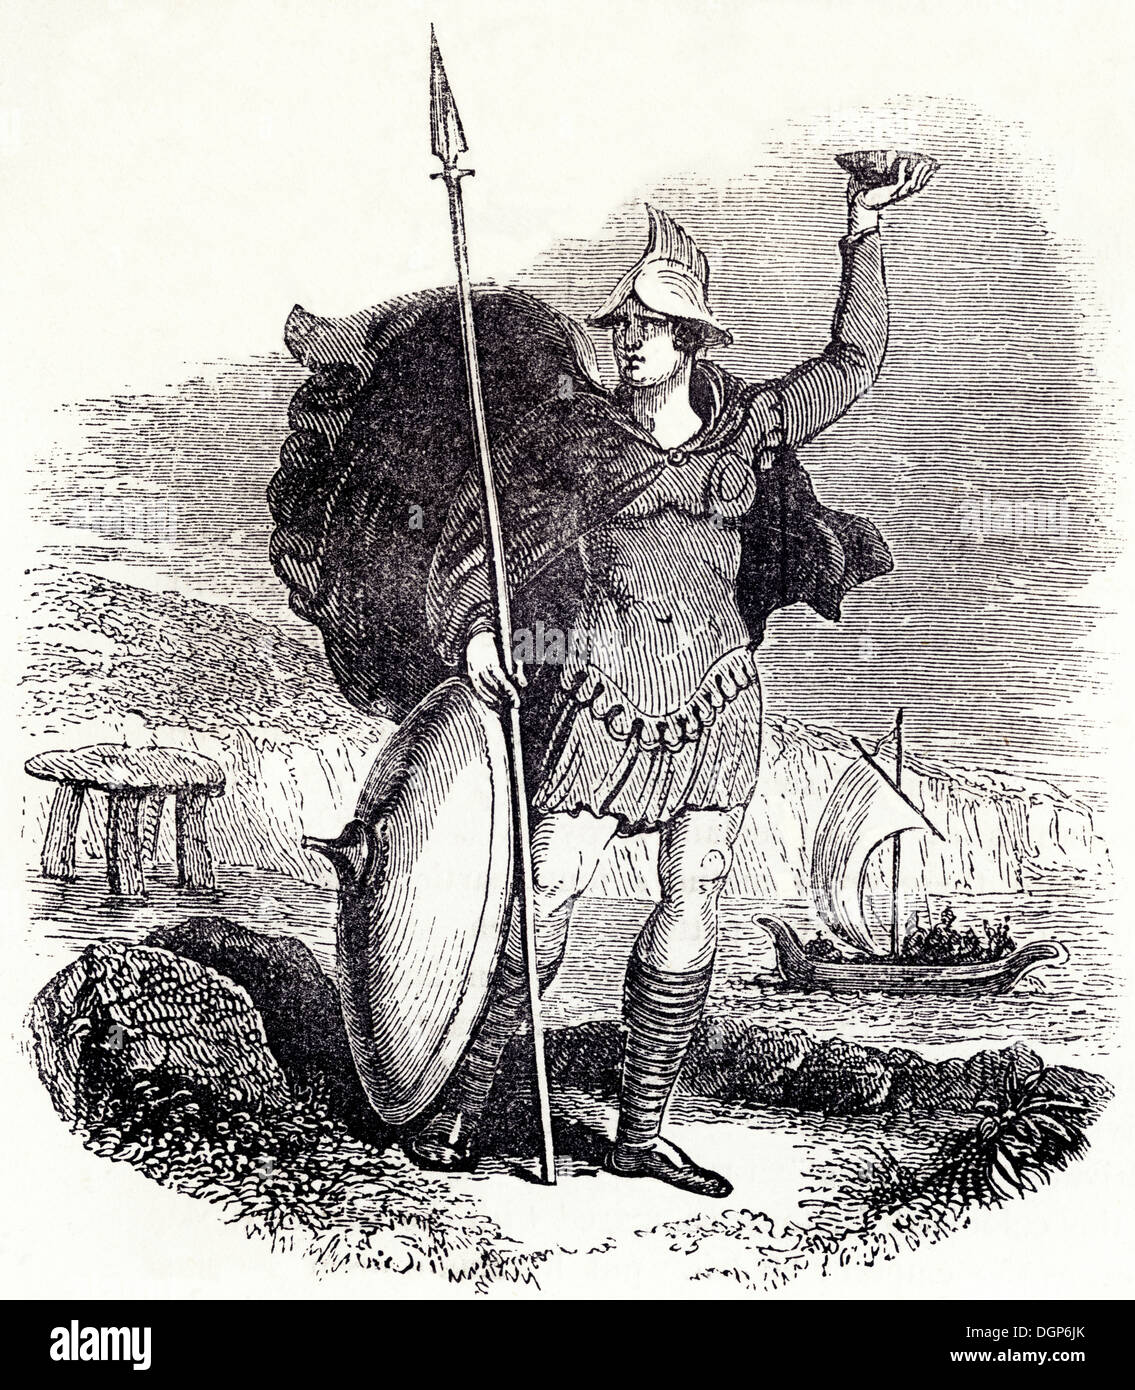 L'Angleterre anglo-saxonne. Armes et costumes d'un chef militaire de Saxon. Circa 1845 gravure sur bois de l'époque victorienne. Banque D'Images